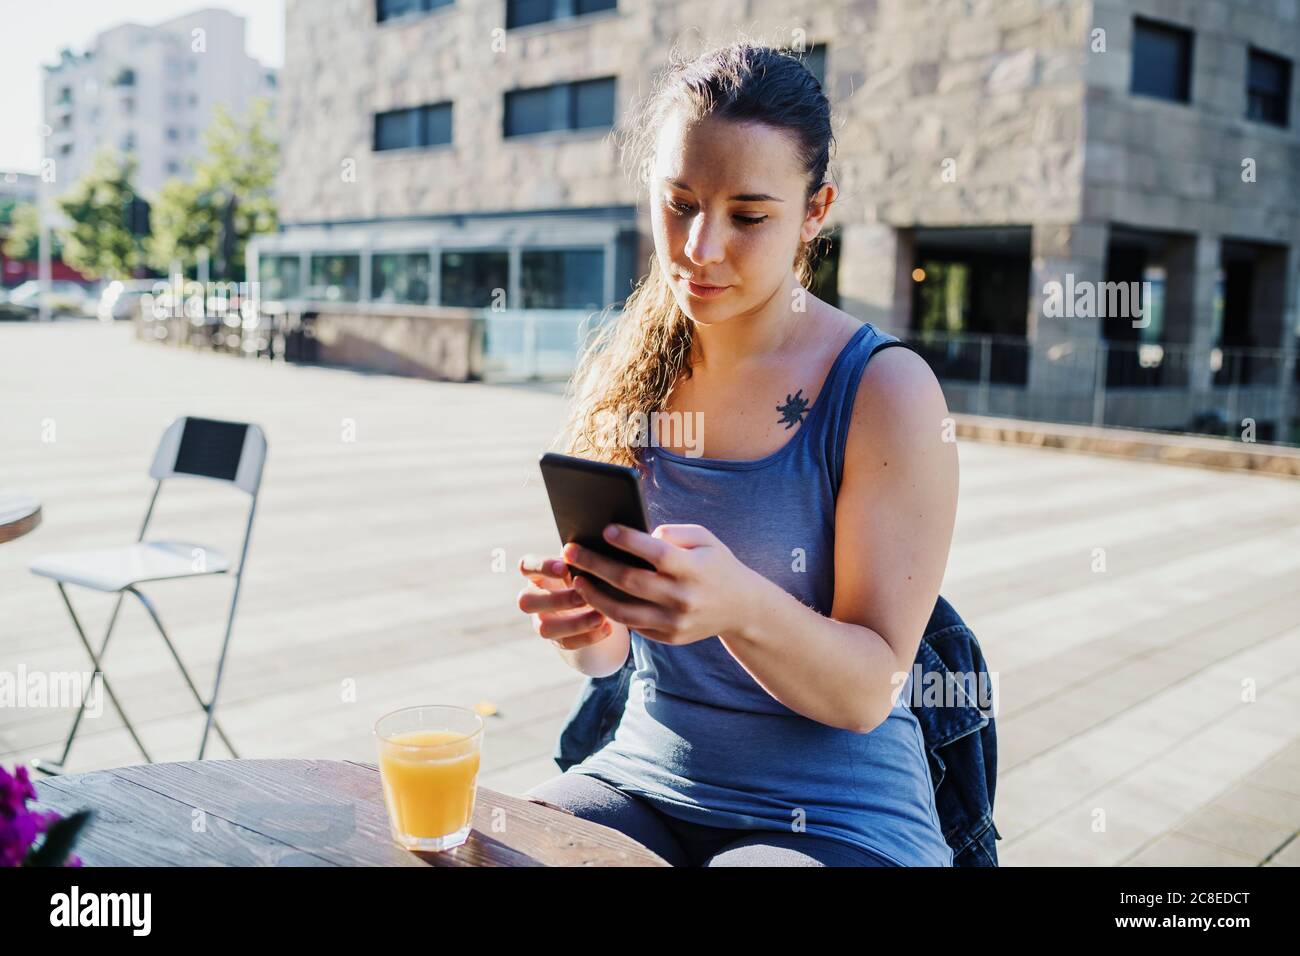 Sportliche junge Frau mit Smartphone, während sie auf dem Bürgersteig sitzt Cafe in der Stadt Stockfoto